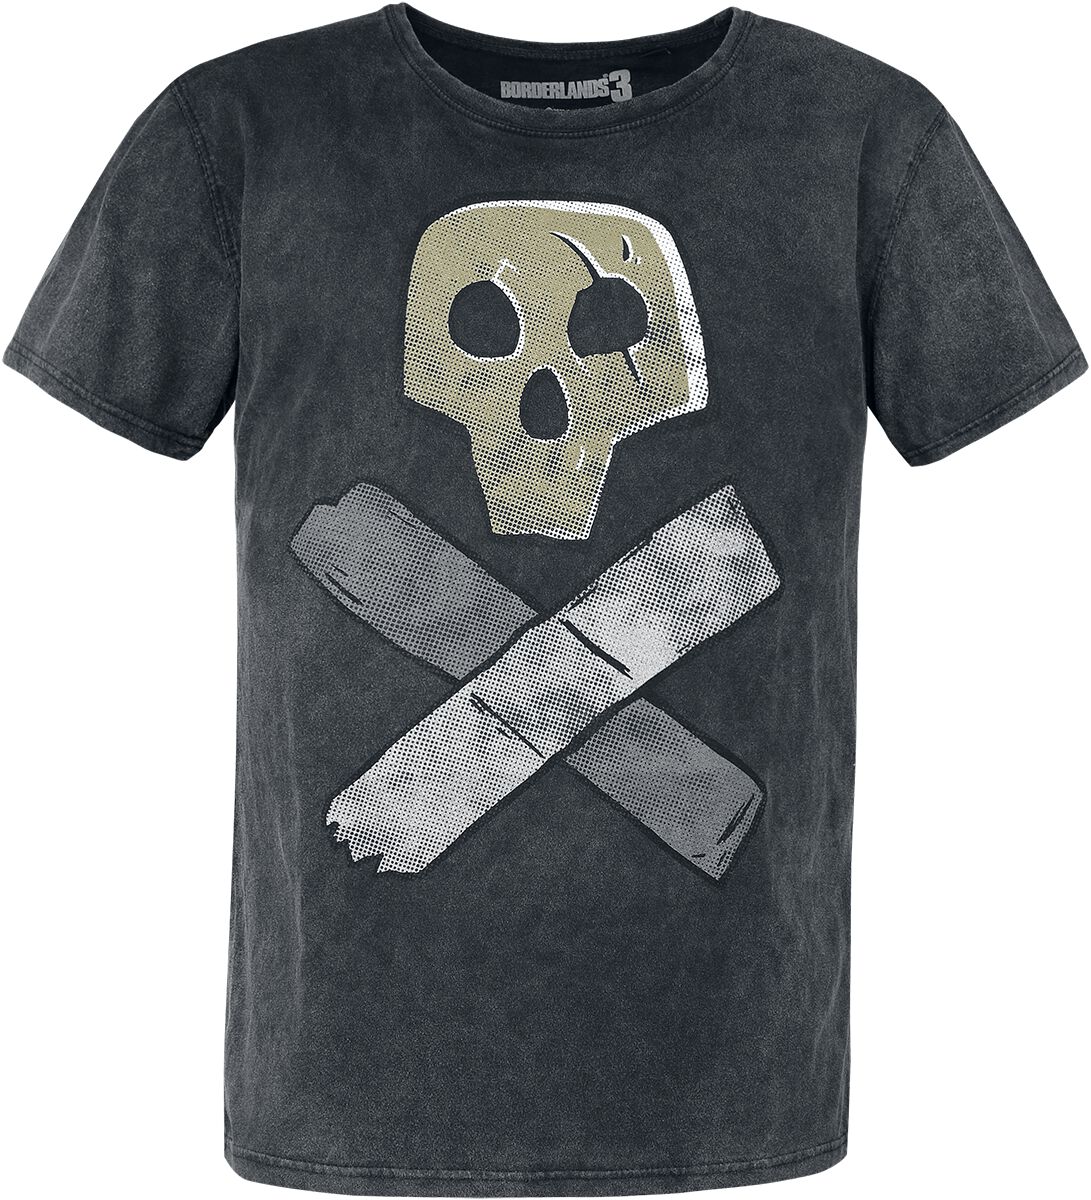 Borderlands - Gaming T-Shirt - 3 - Skull - S bis XL - für Männer - Größe M - grau  - EMP exklusives Merchandise!